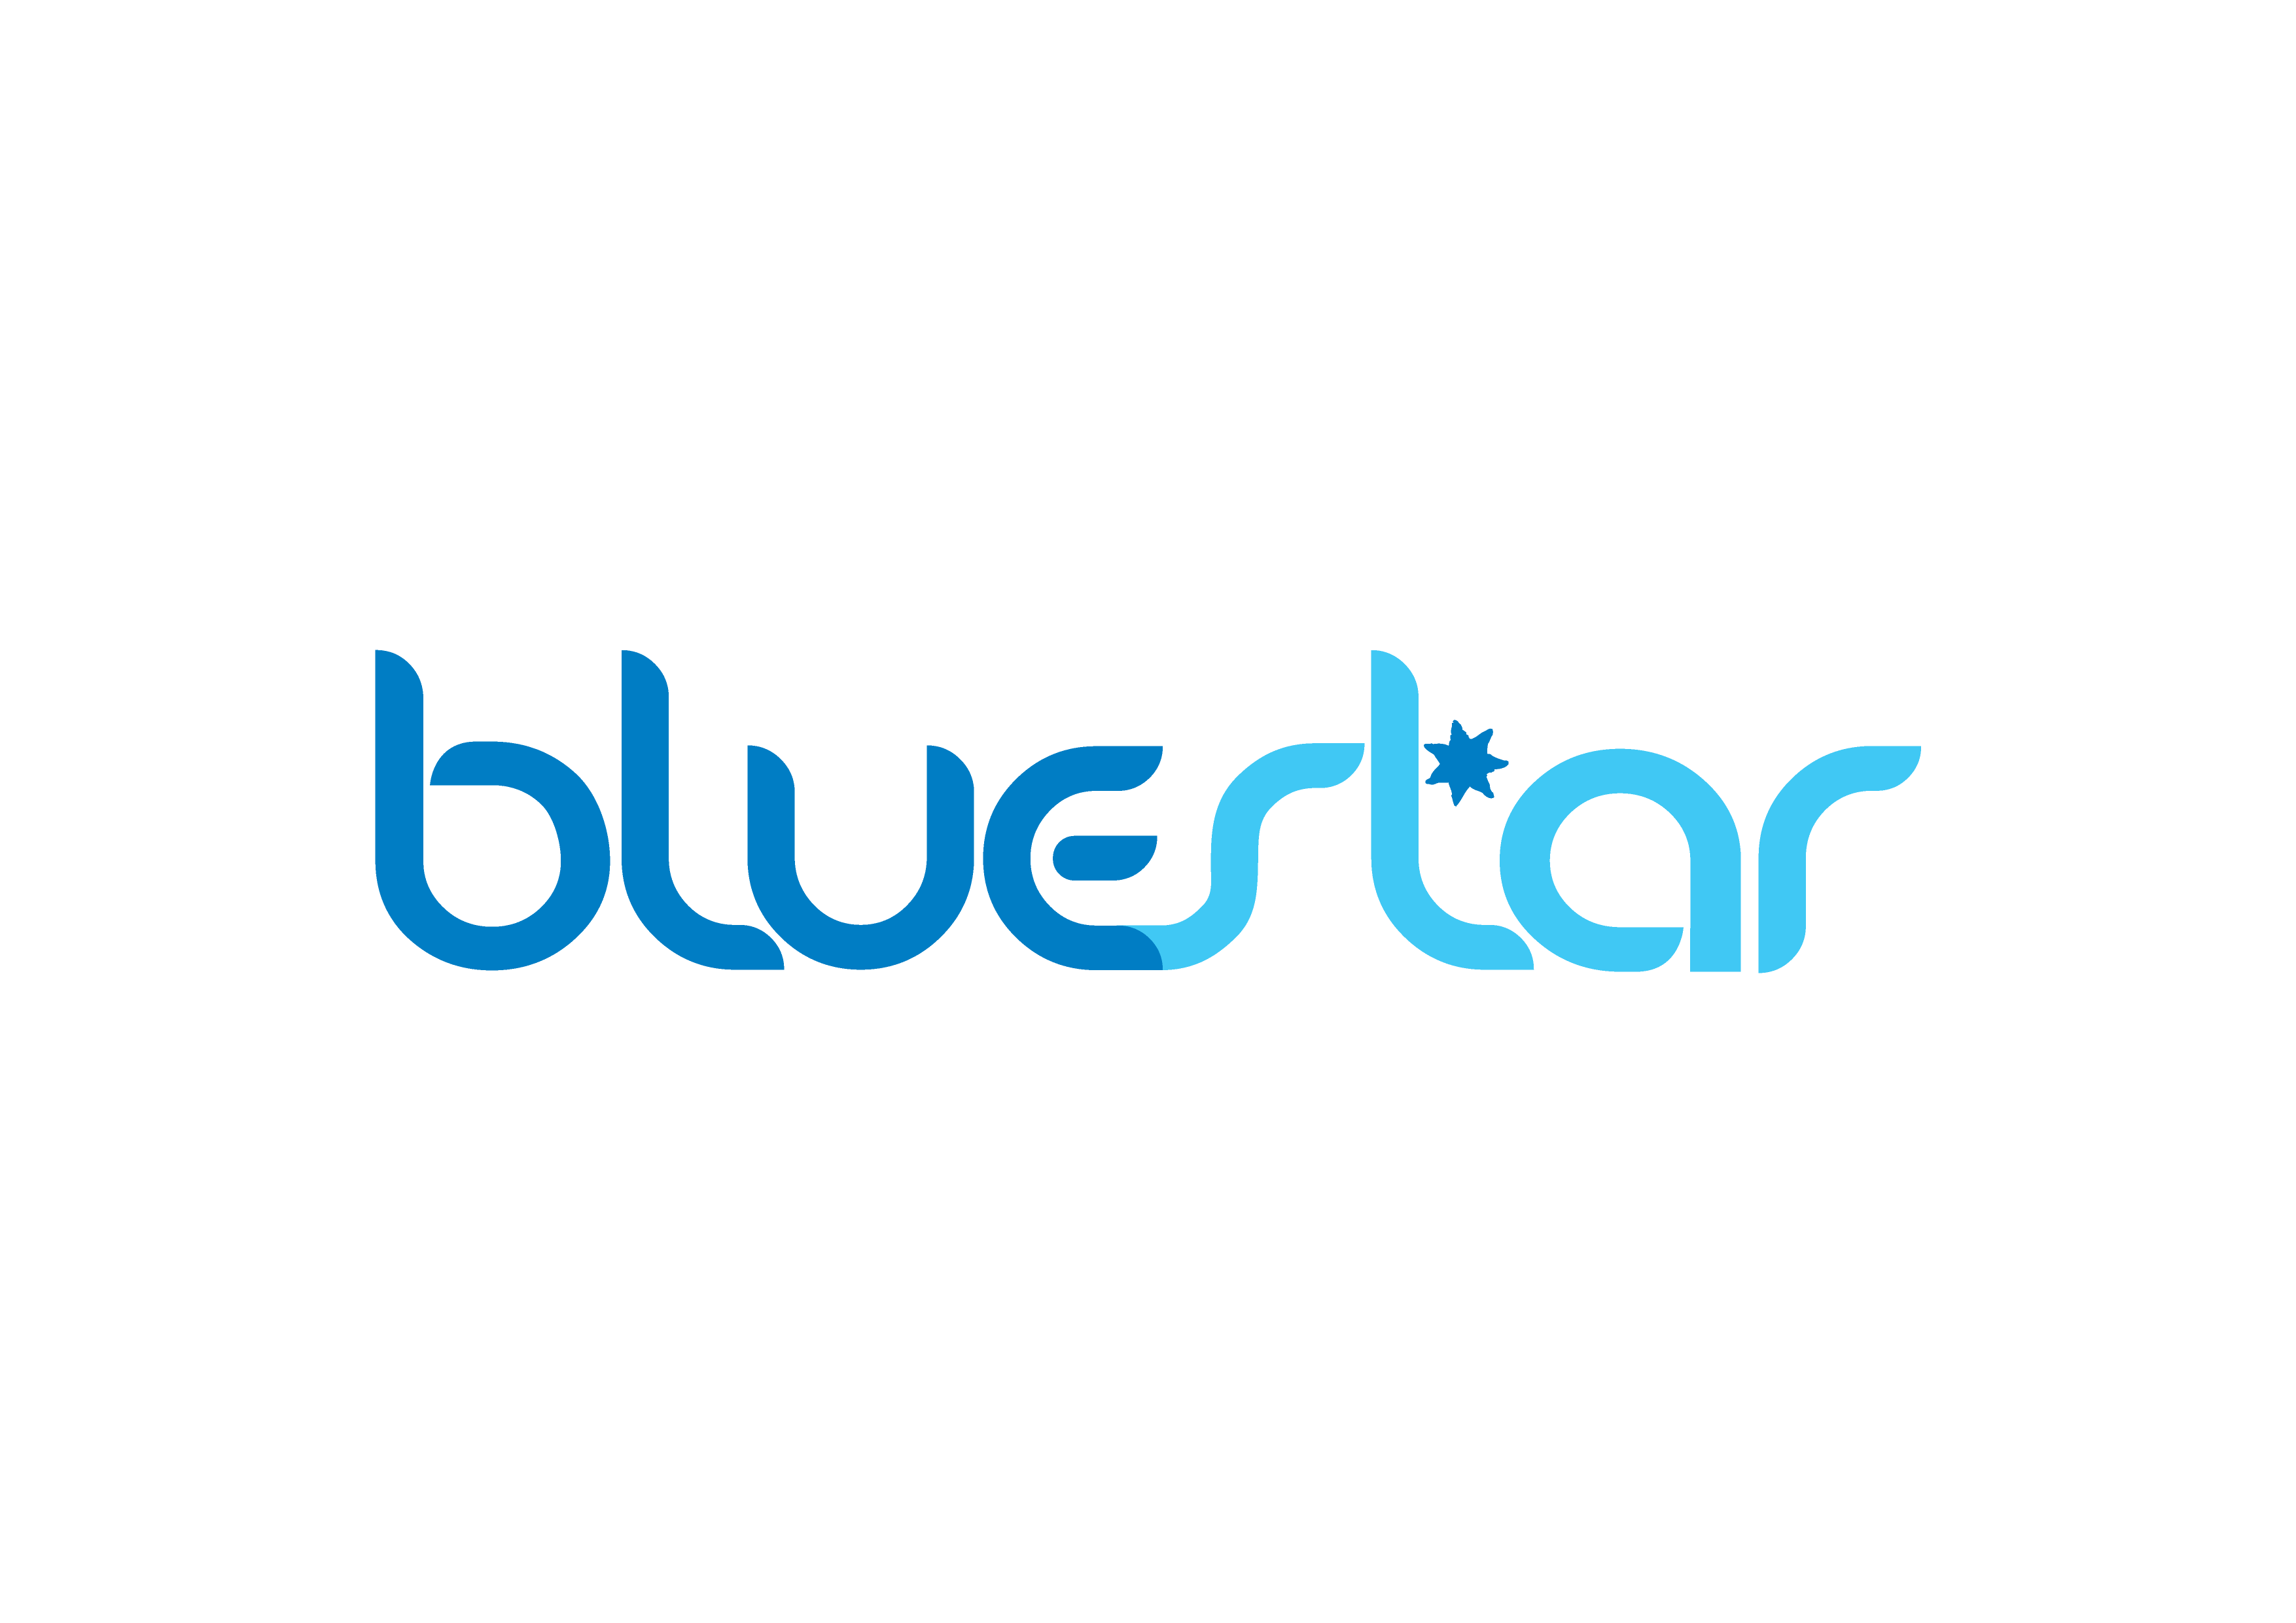 Blue Star Logo - About Bluestar